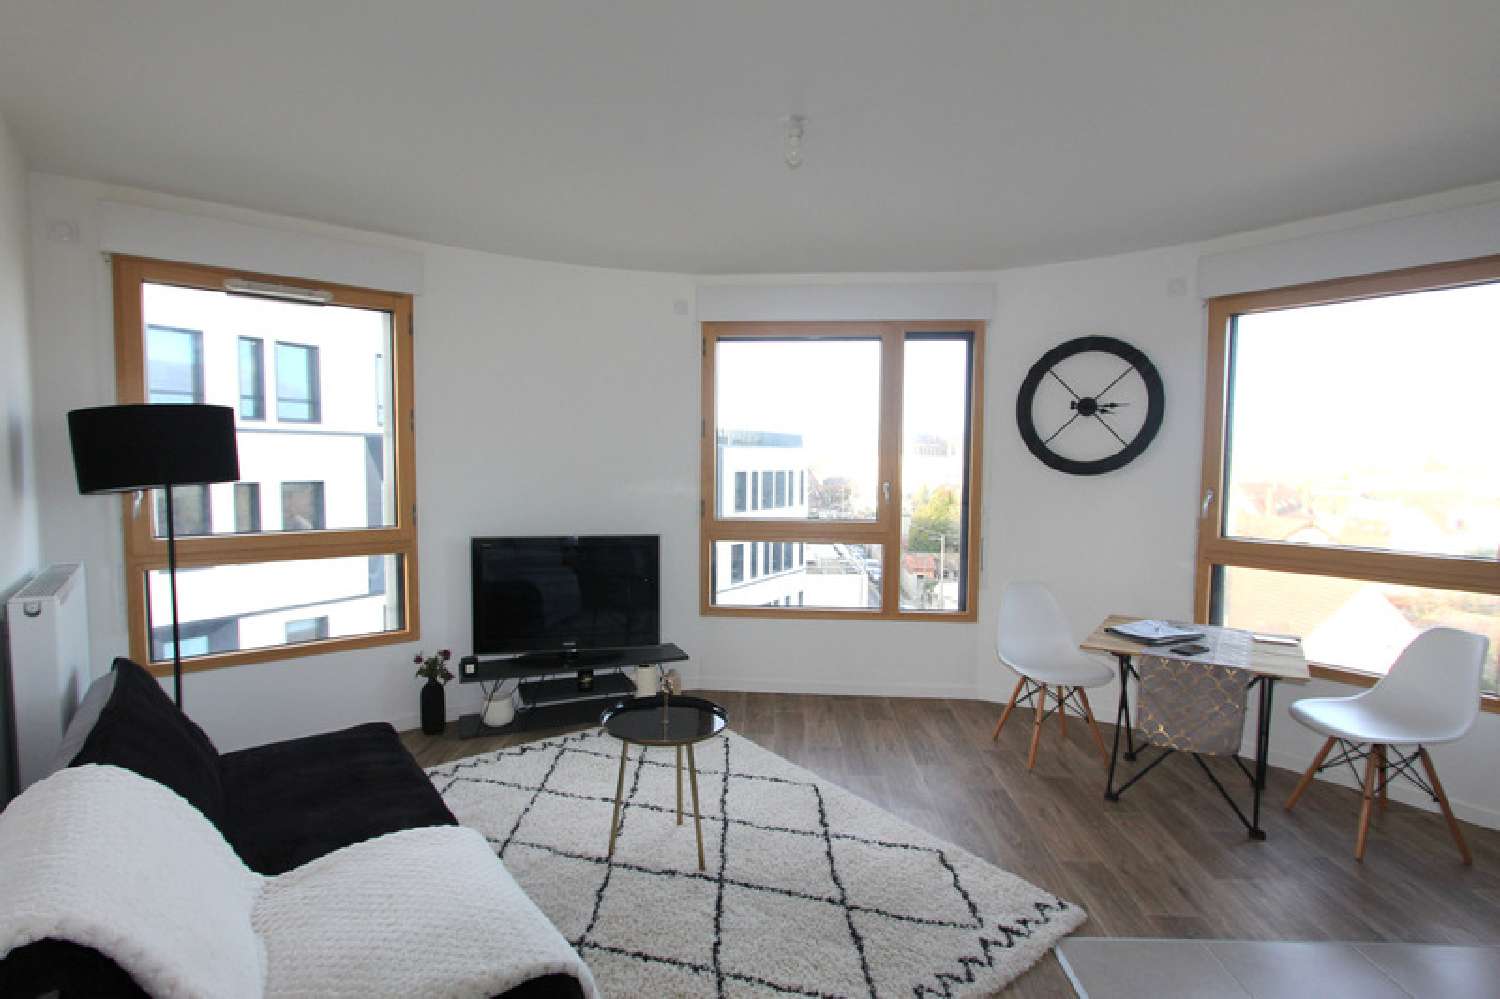  for sale apartment Mantes-la-Jolie Yvelines 1